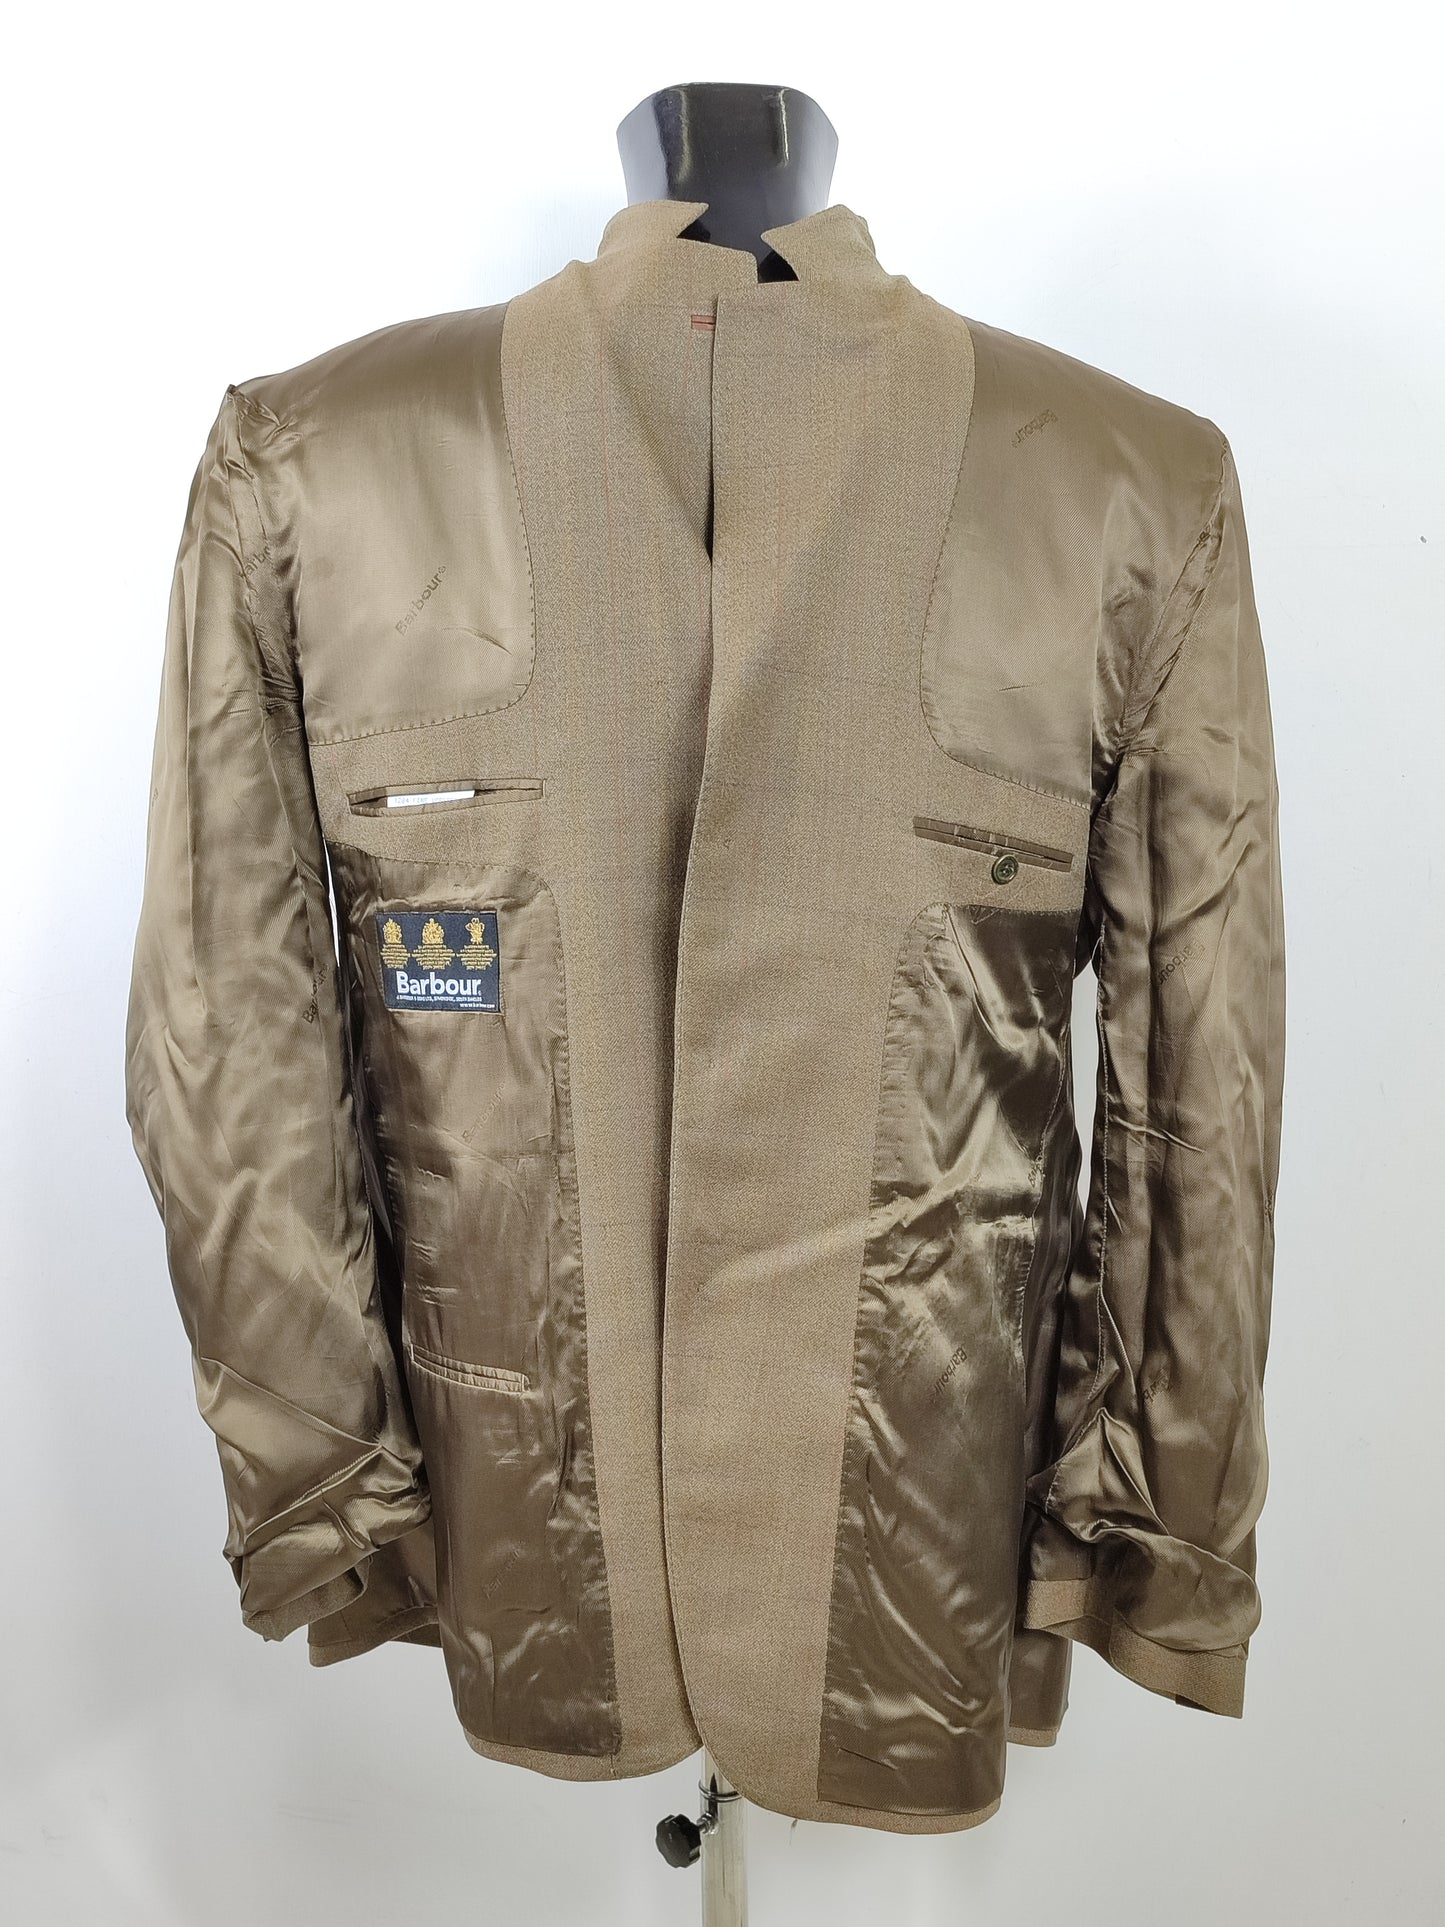 Giacca Blazer Barbour Uomo in lana XL - Man Wool blazer Jacket Size XL c46/117 cm